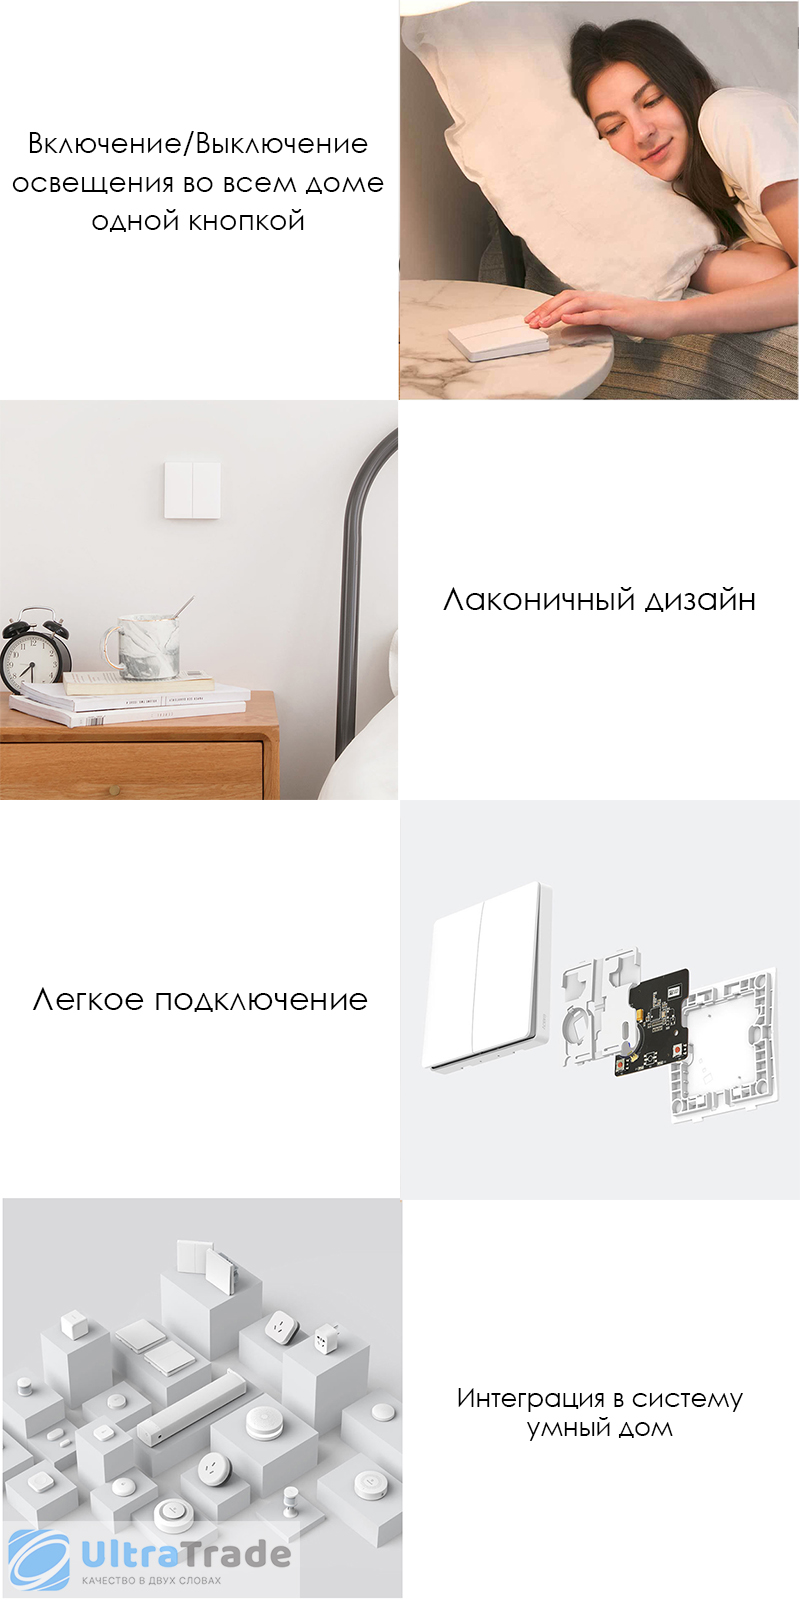 Беспроводной выключатель двухклавишный Xiaomi Aqara Smart Light Control White (WXKG02LM)